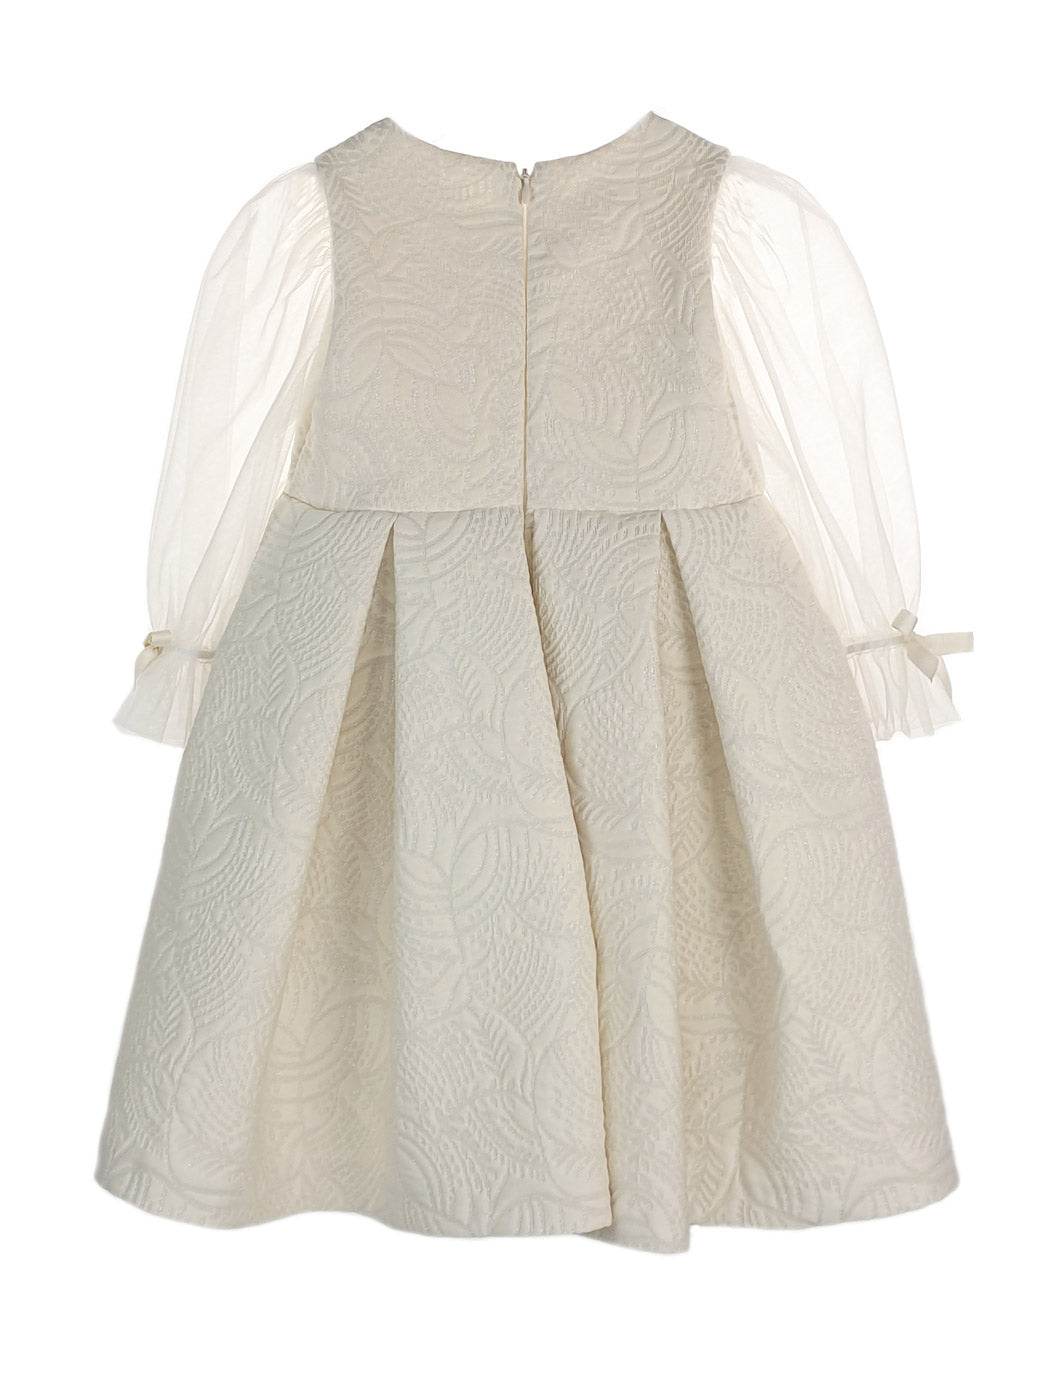 Βρεφικό φόρεμα Brocade με τούλινα μανίκια - EDUARDA